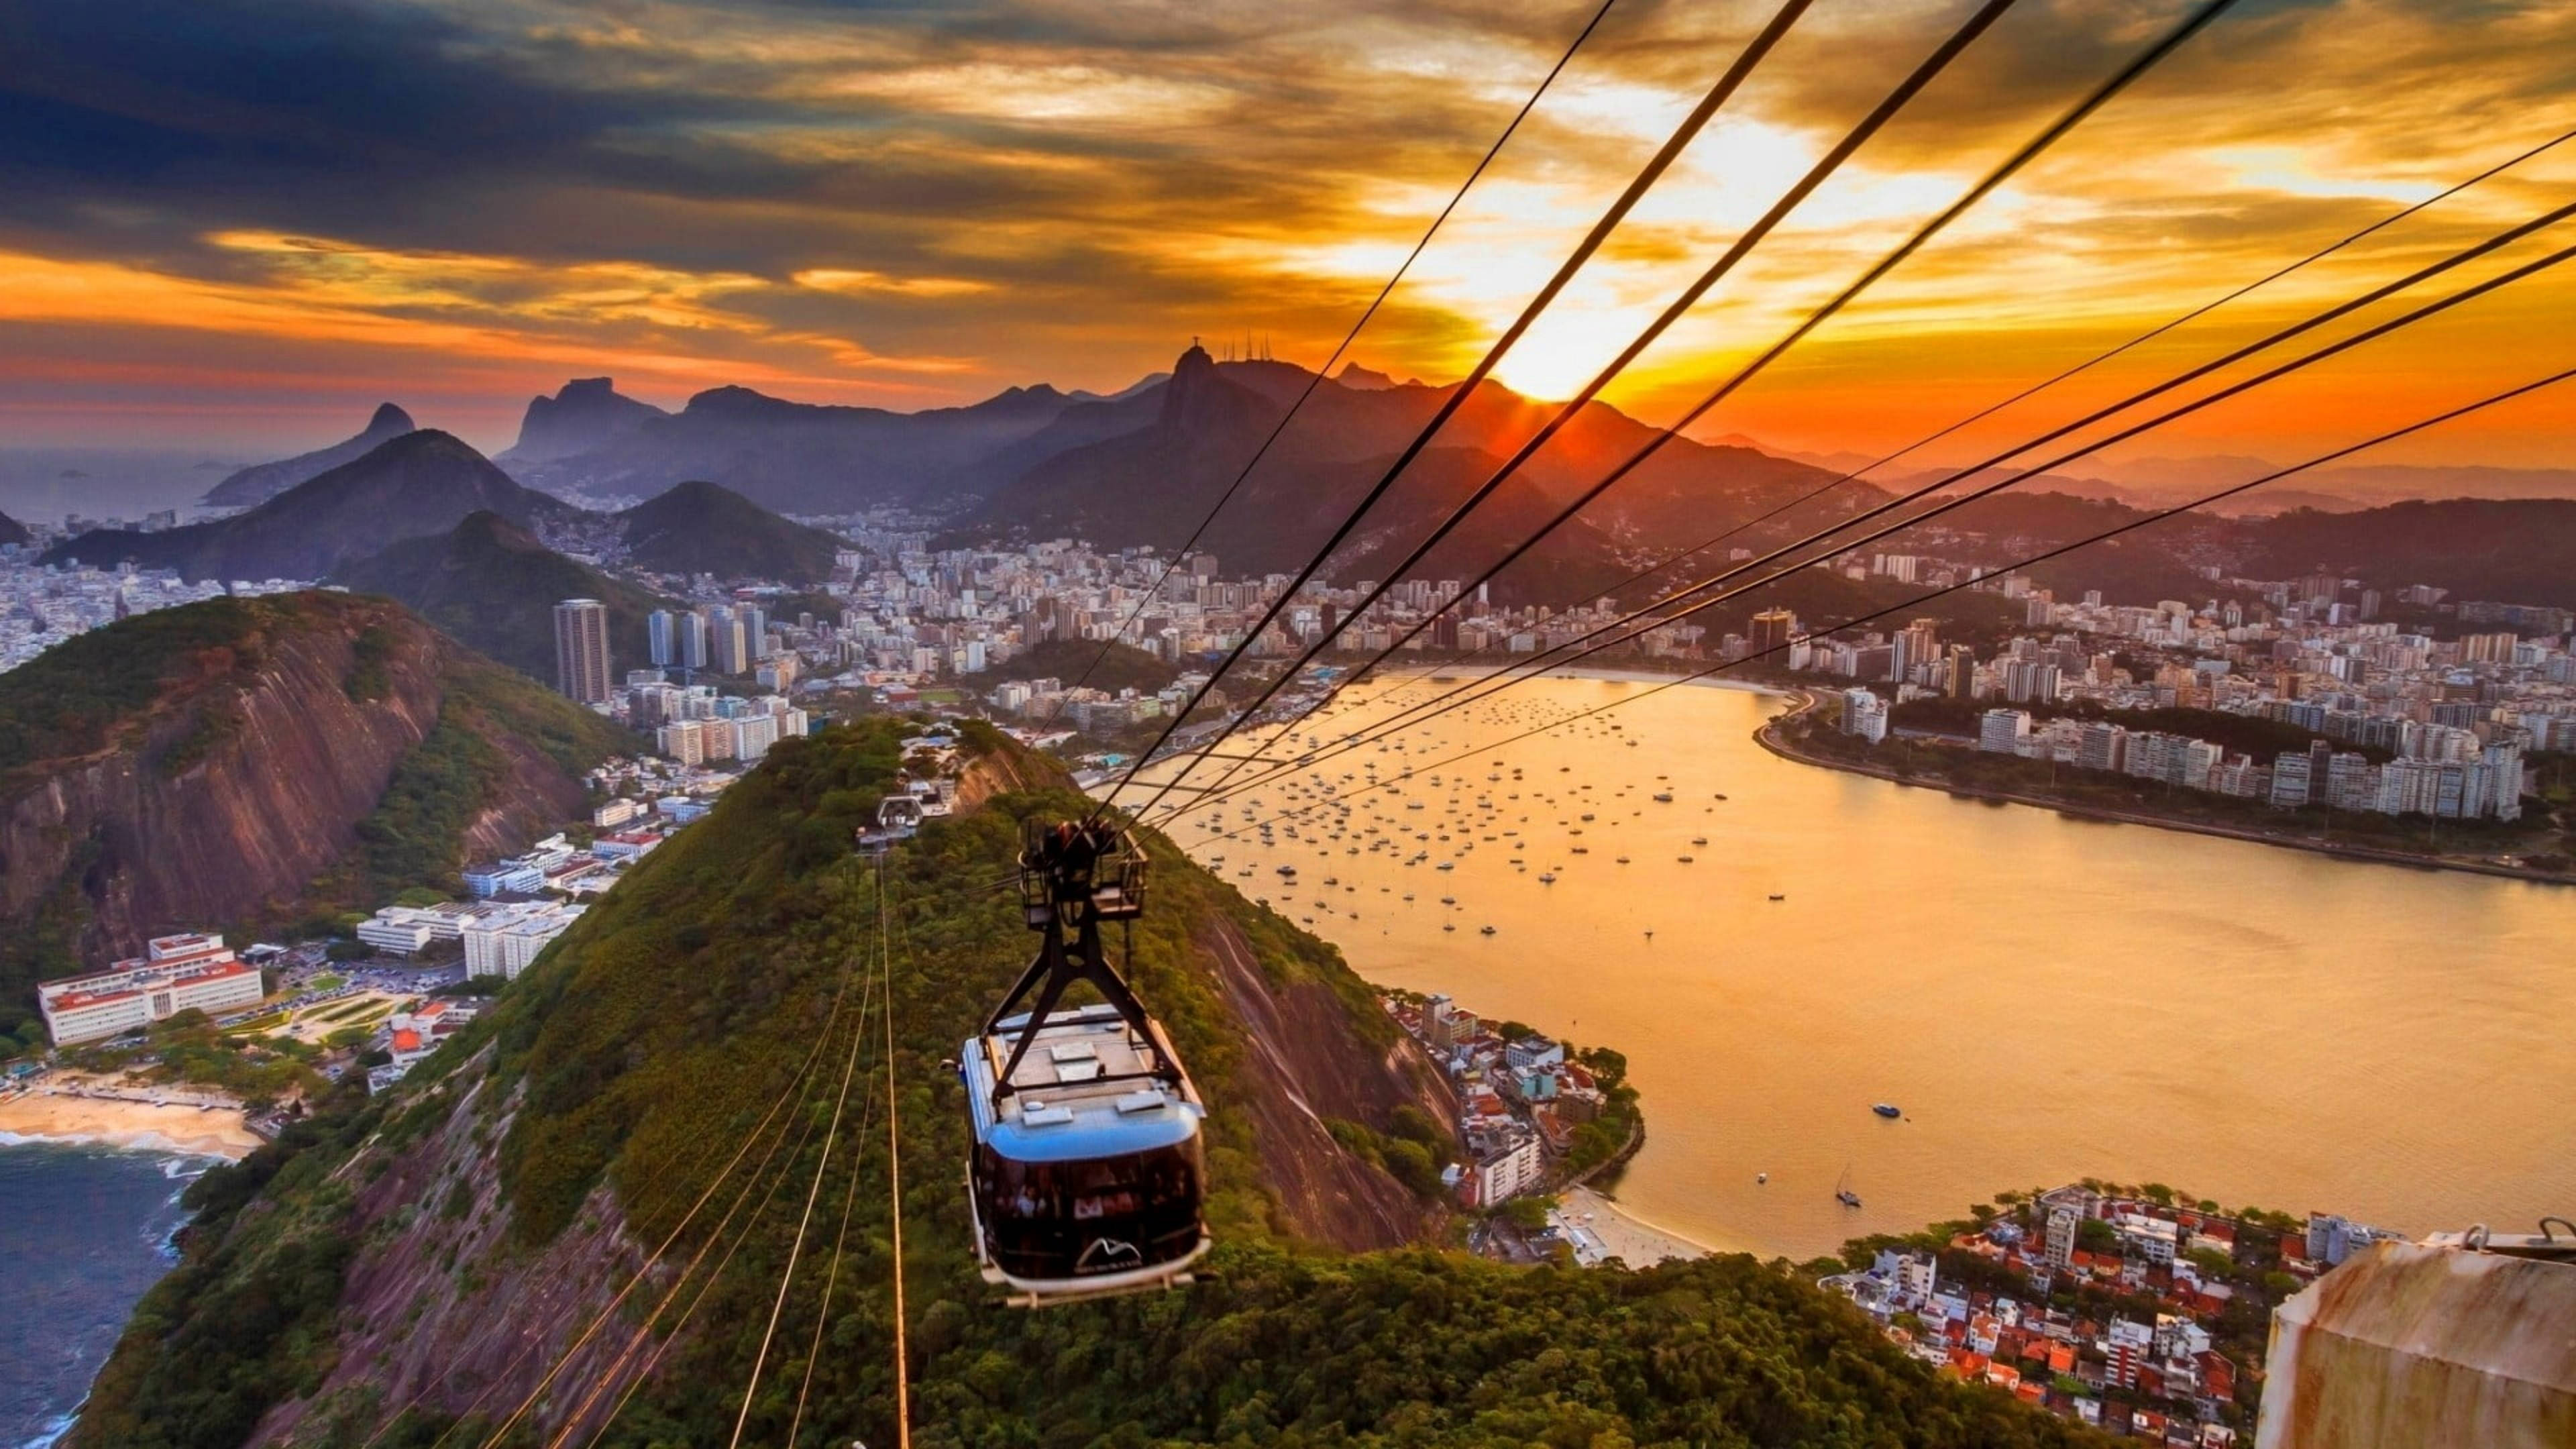 Трехсот лет более красивейший вид. Канатная дорога в Рио де Жанейро. Рио де Жанейро комнатная дорога. Рио-де-Жанейро (город в Бразилии). Канатная дорога в Бразилии.